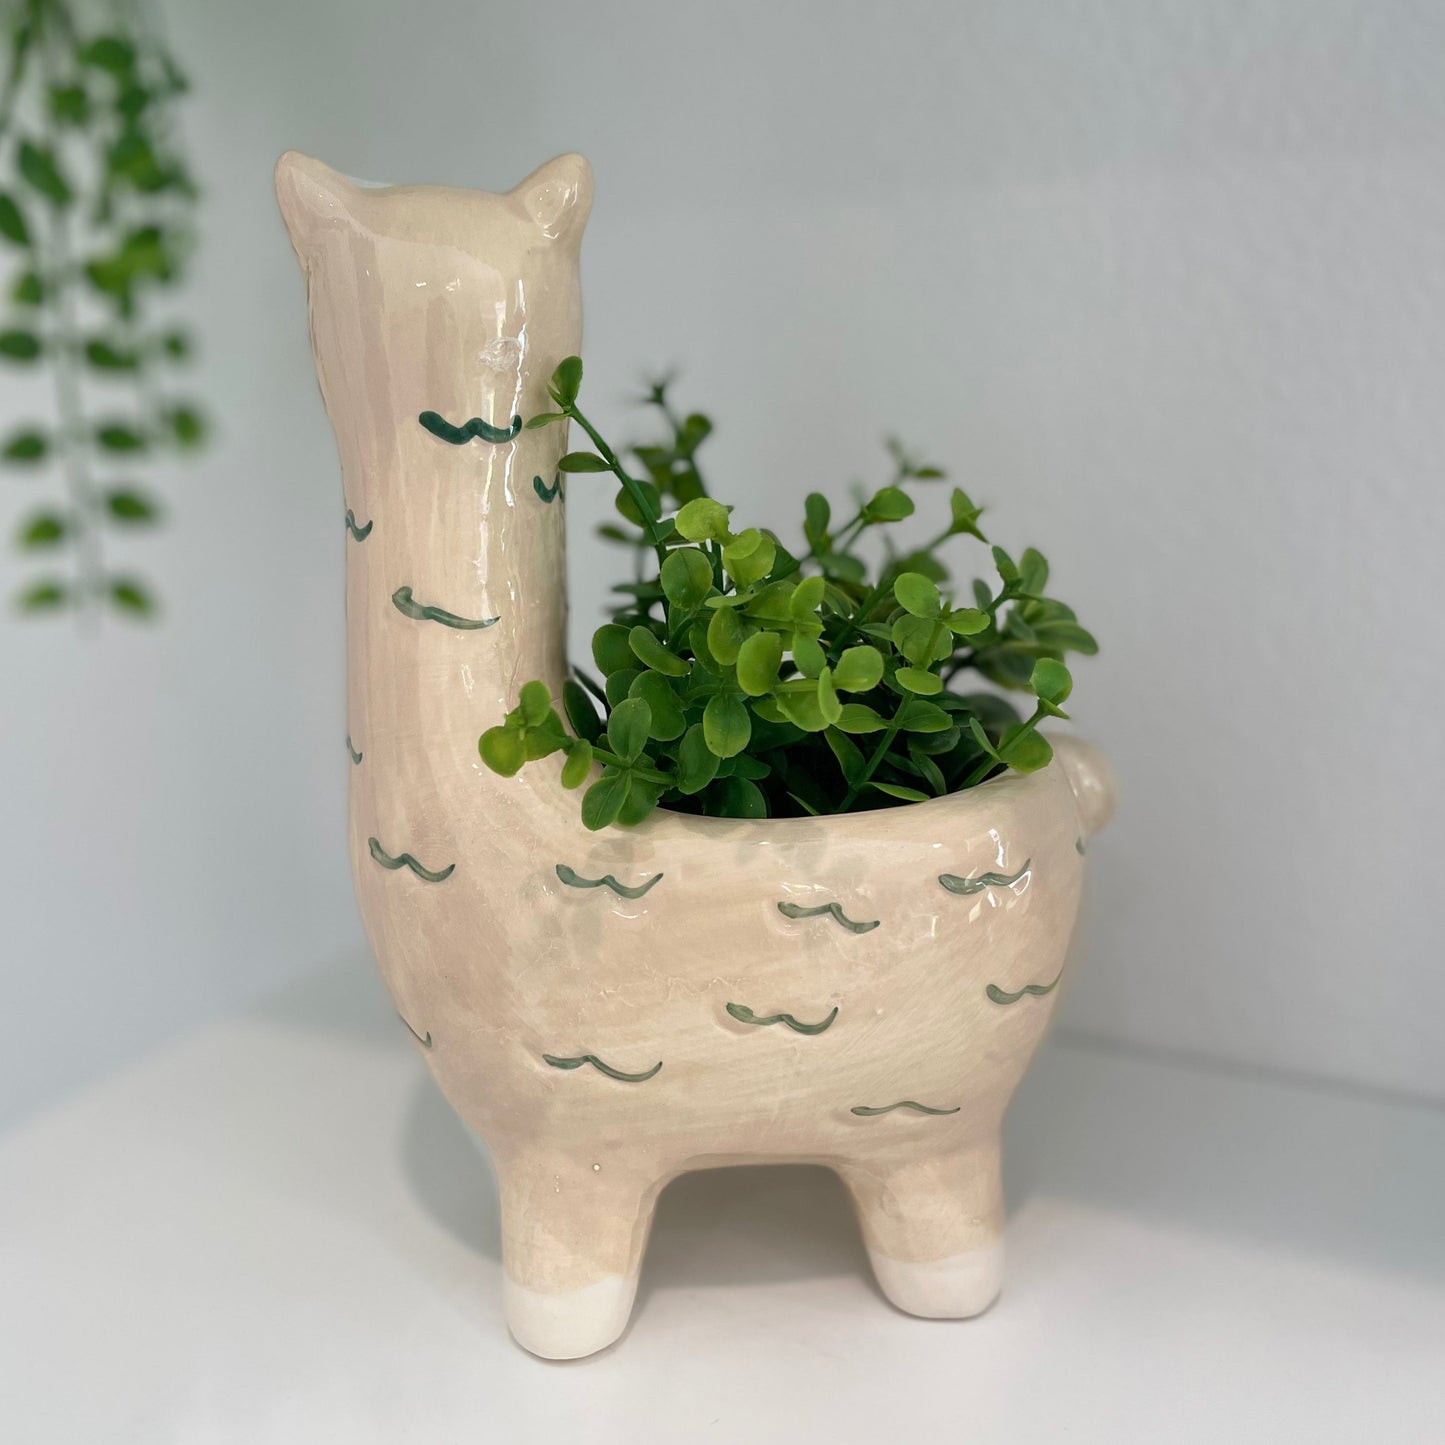 7.4" Llama Ceramic Planter